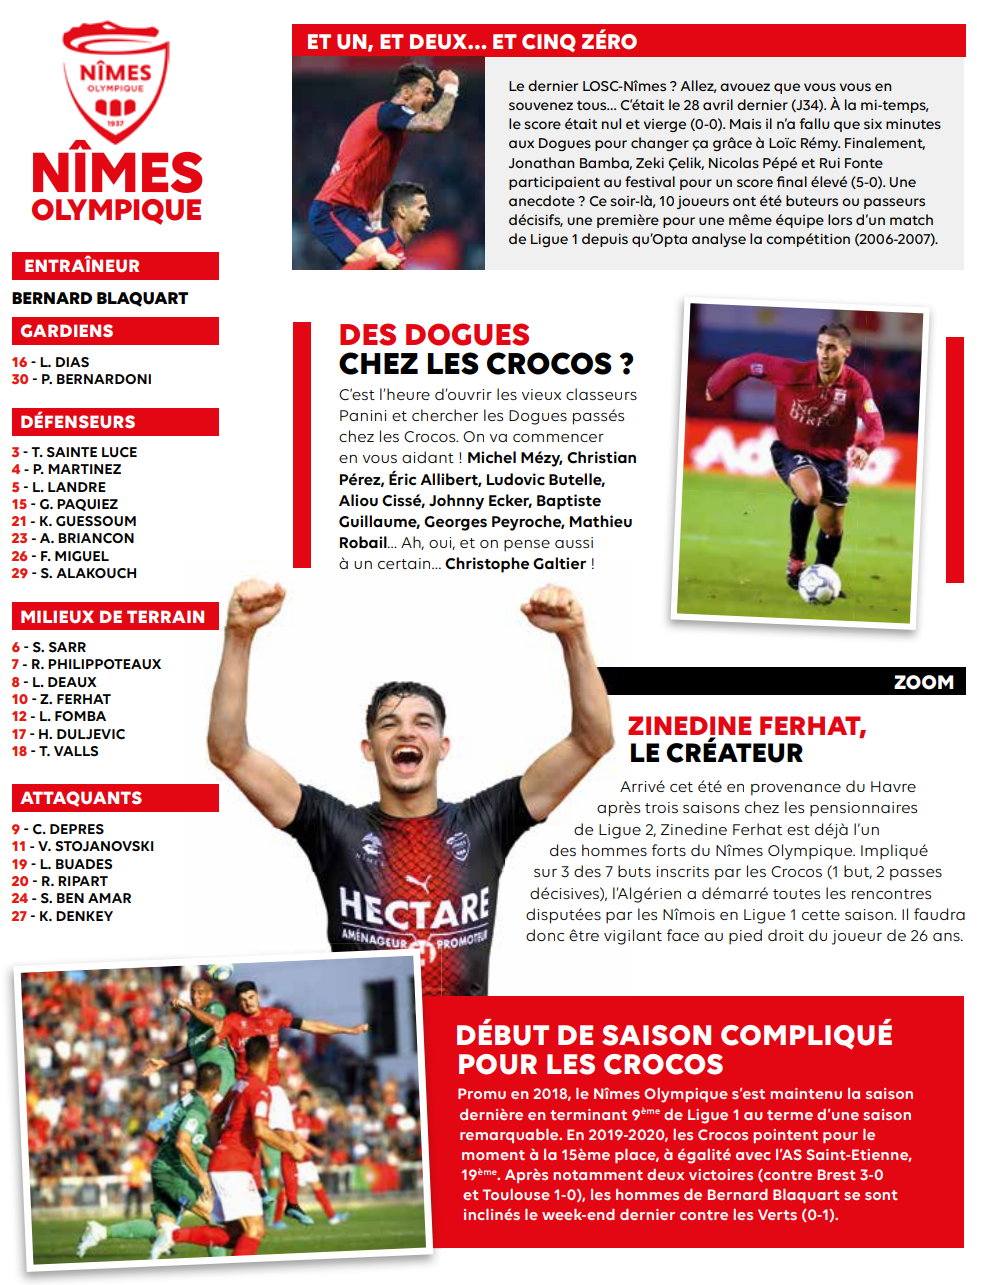 SAISON 2019-2020 - 9e journée de Ligue 1 Conforama - LOSC / NO   Adv